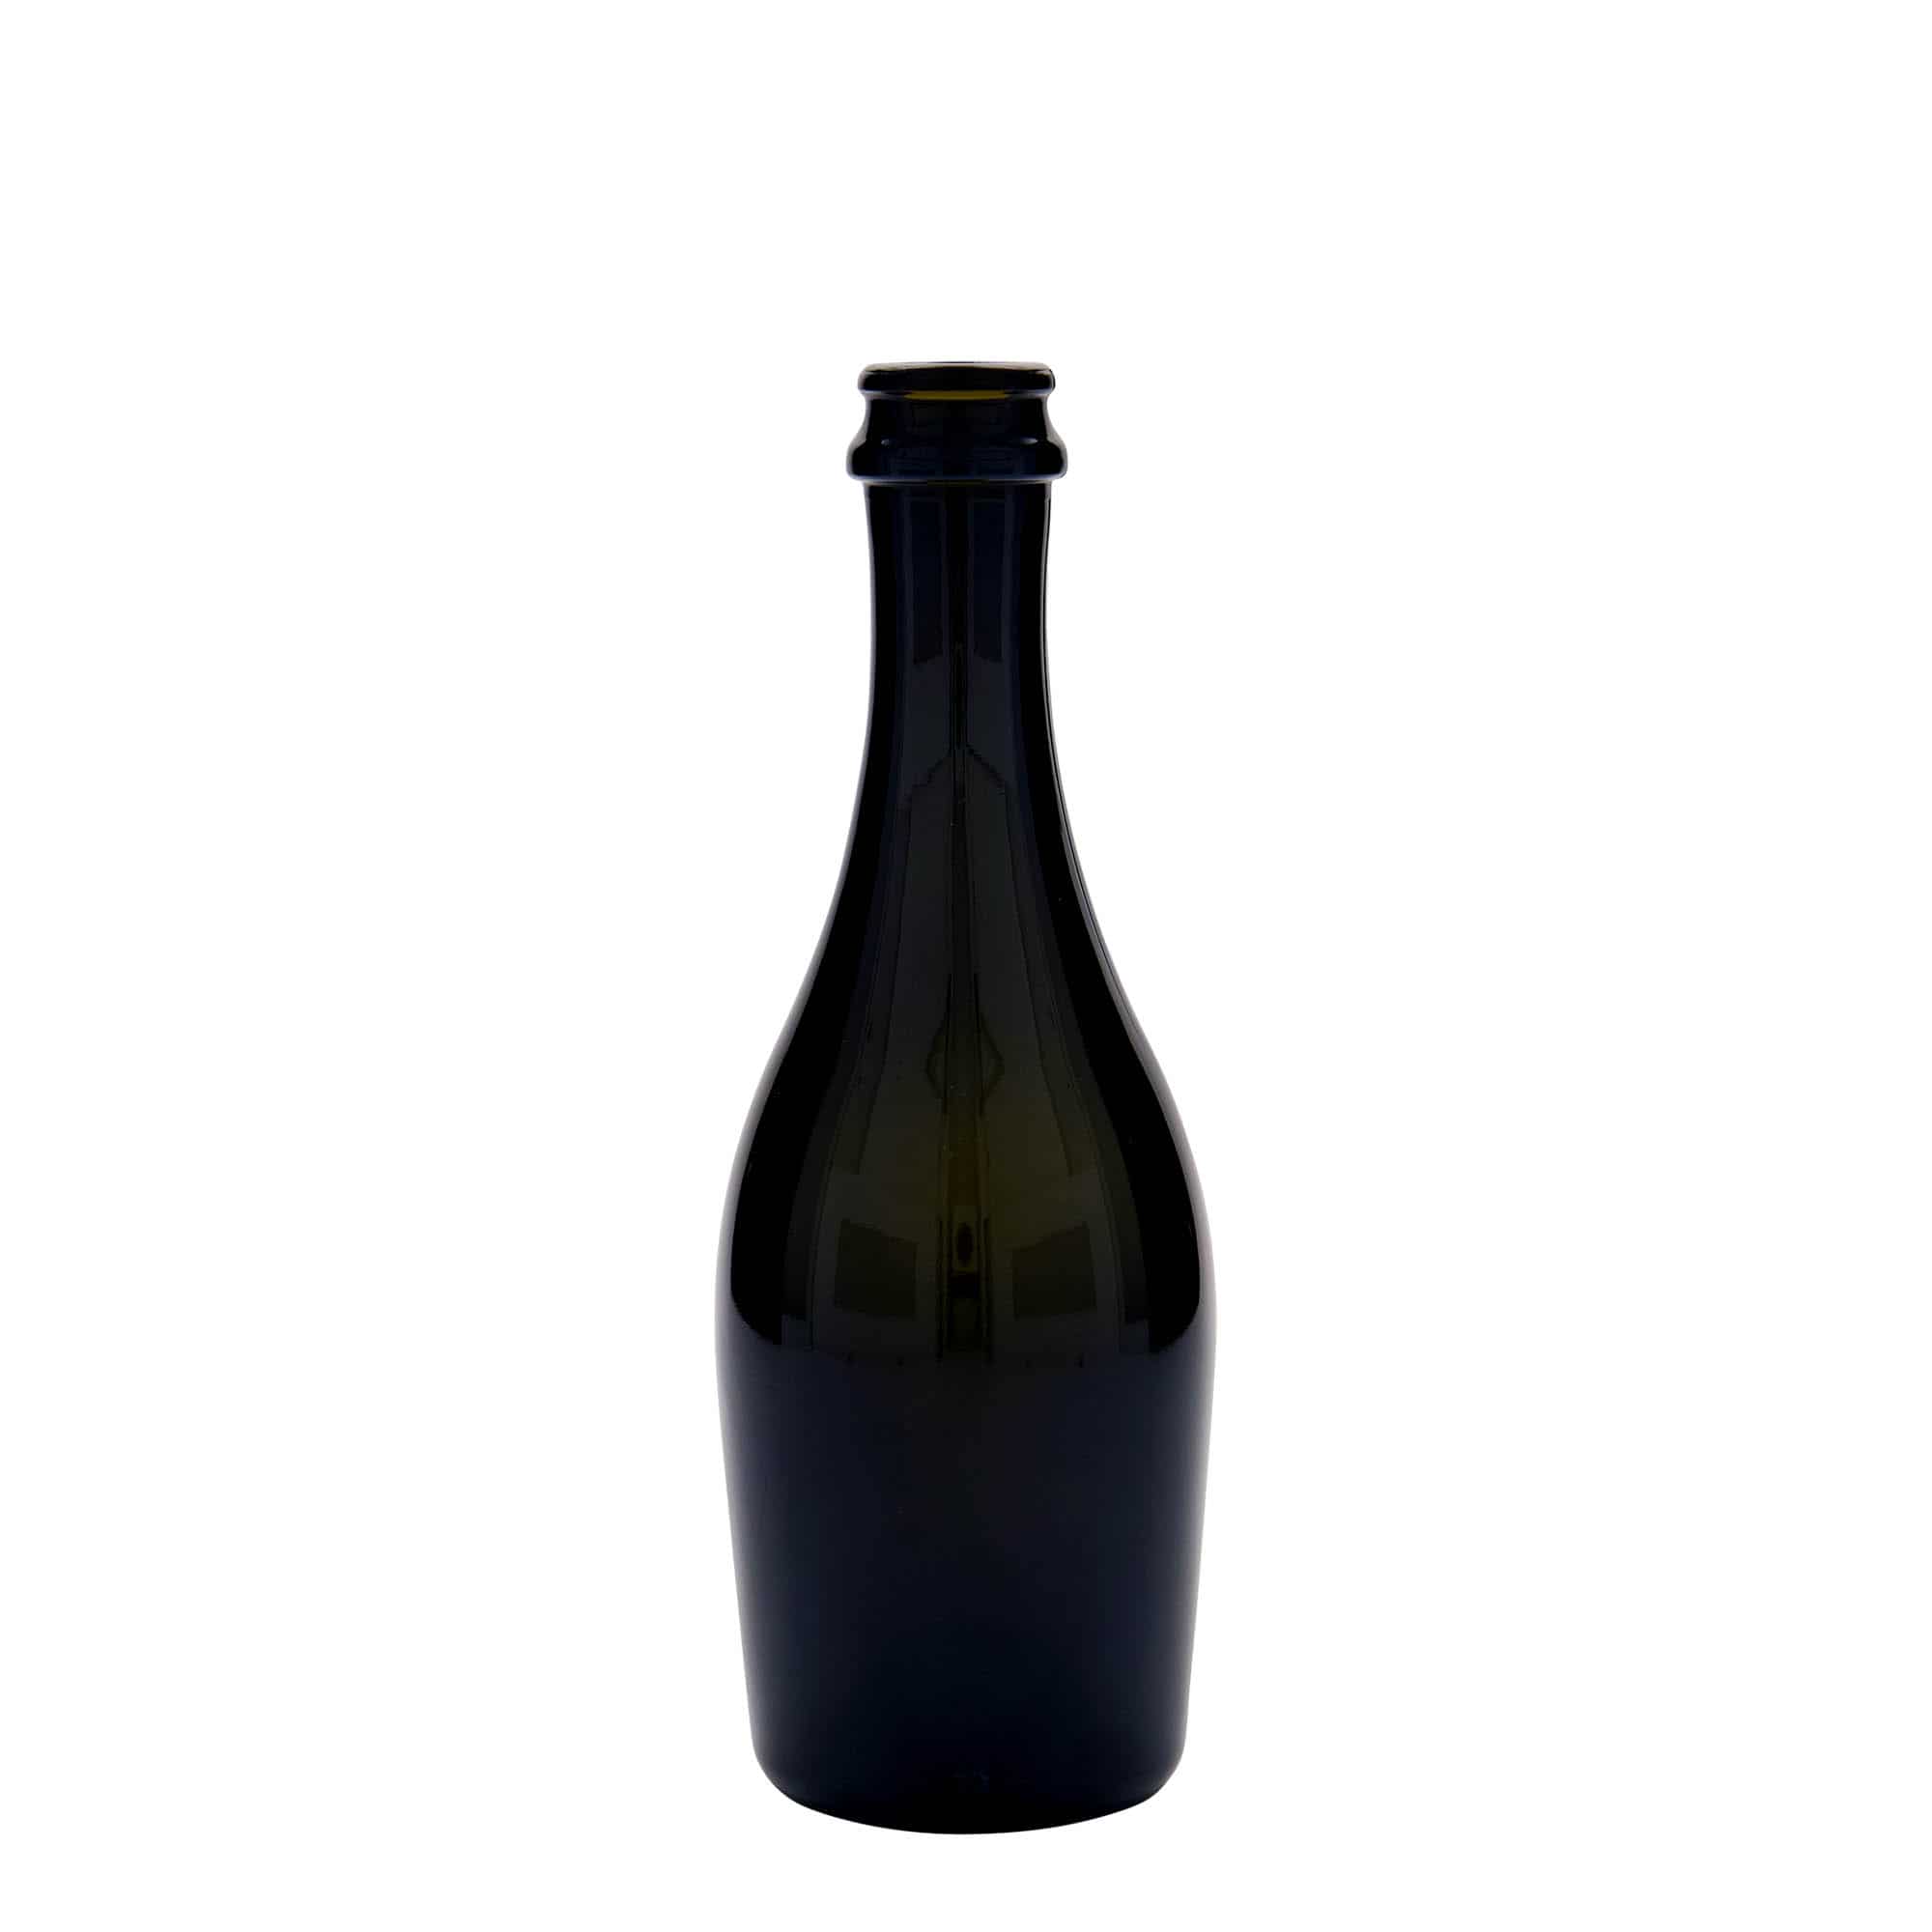 330 ml butelka do szampana 'Carmen', szkło, kolor zielony antyczny, zamknięcie: kapsel